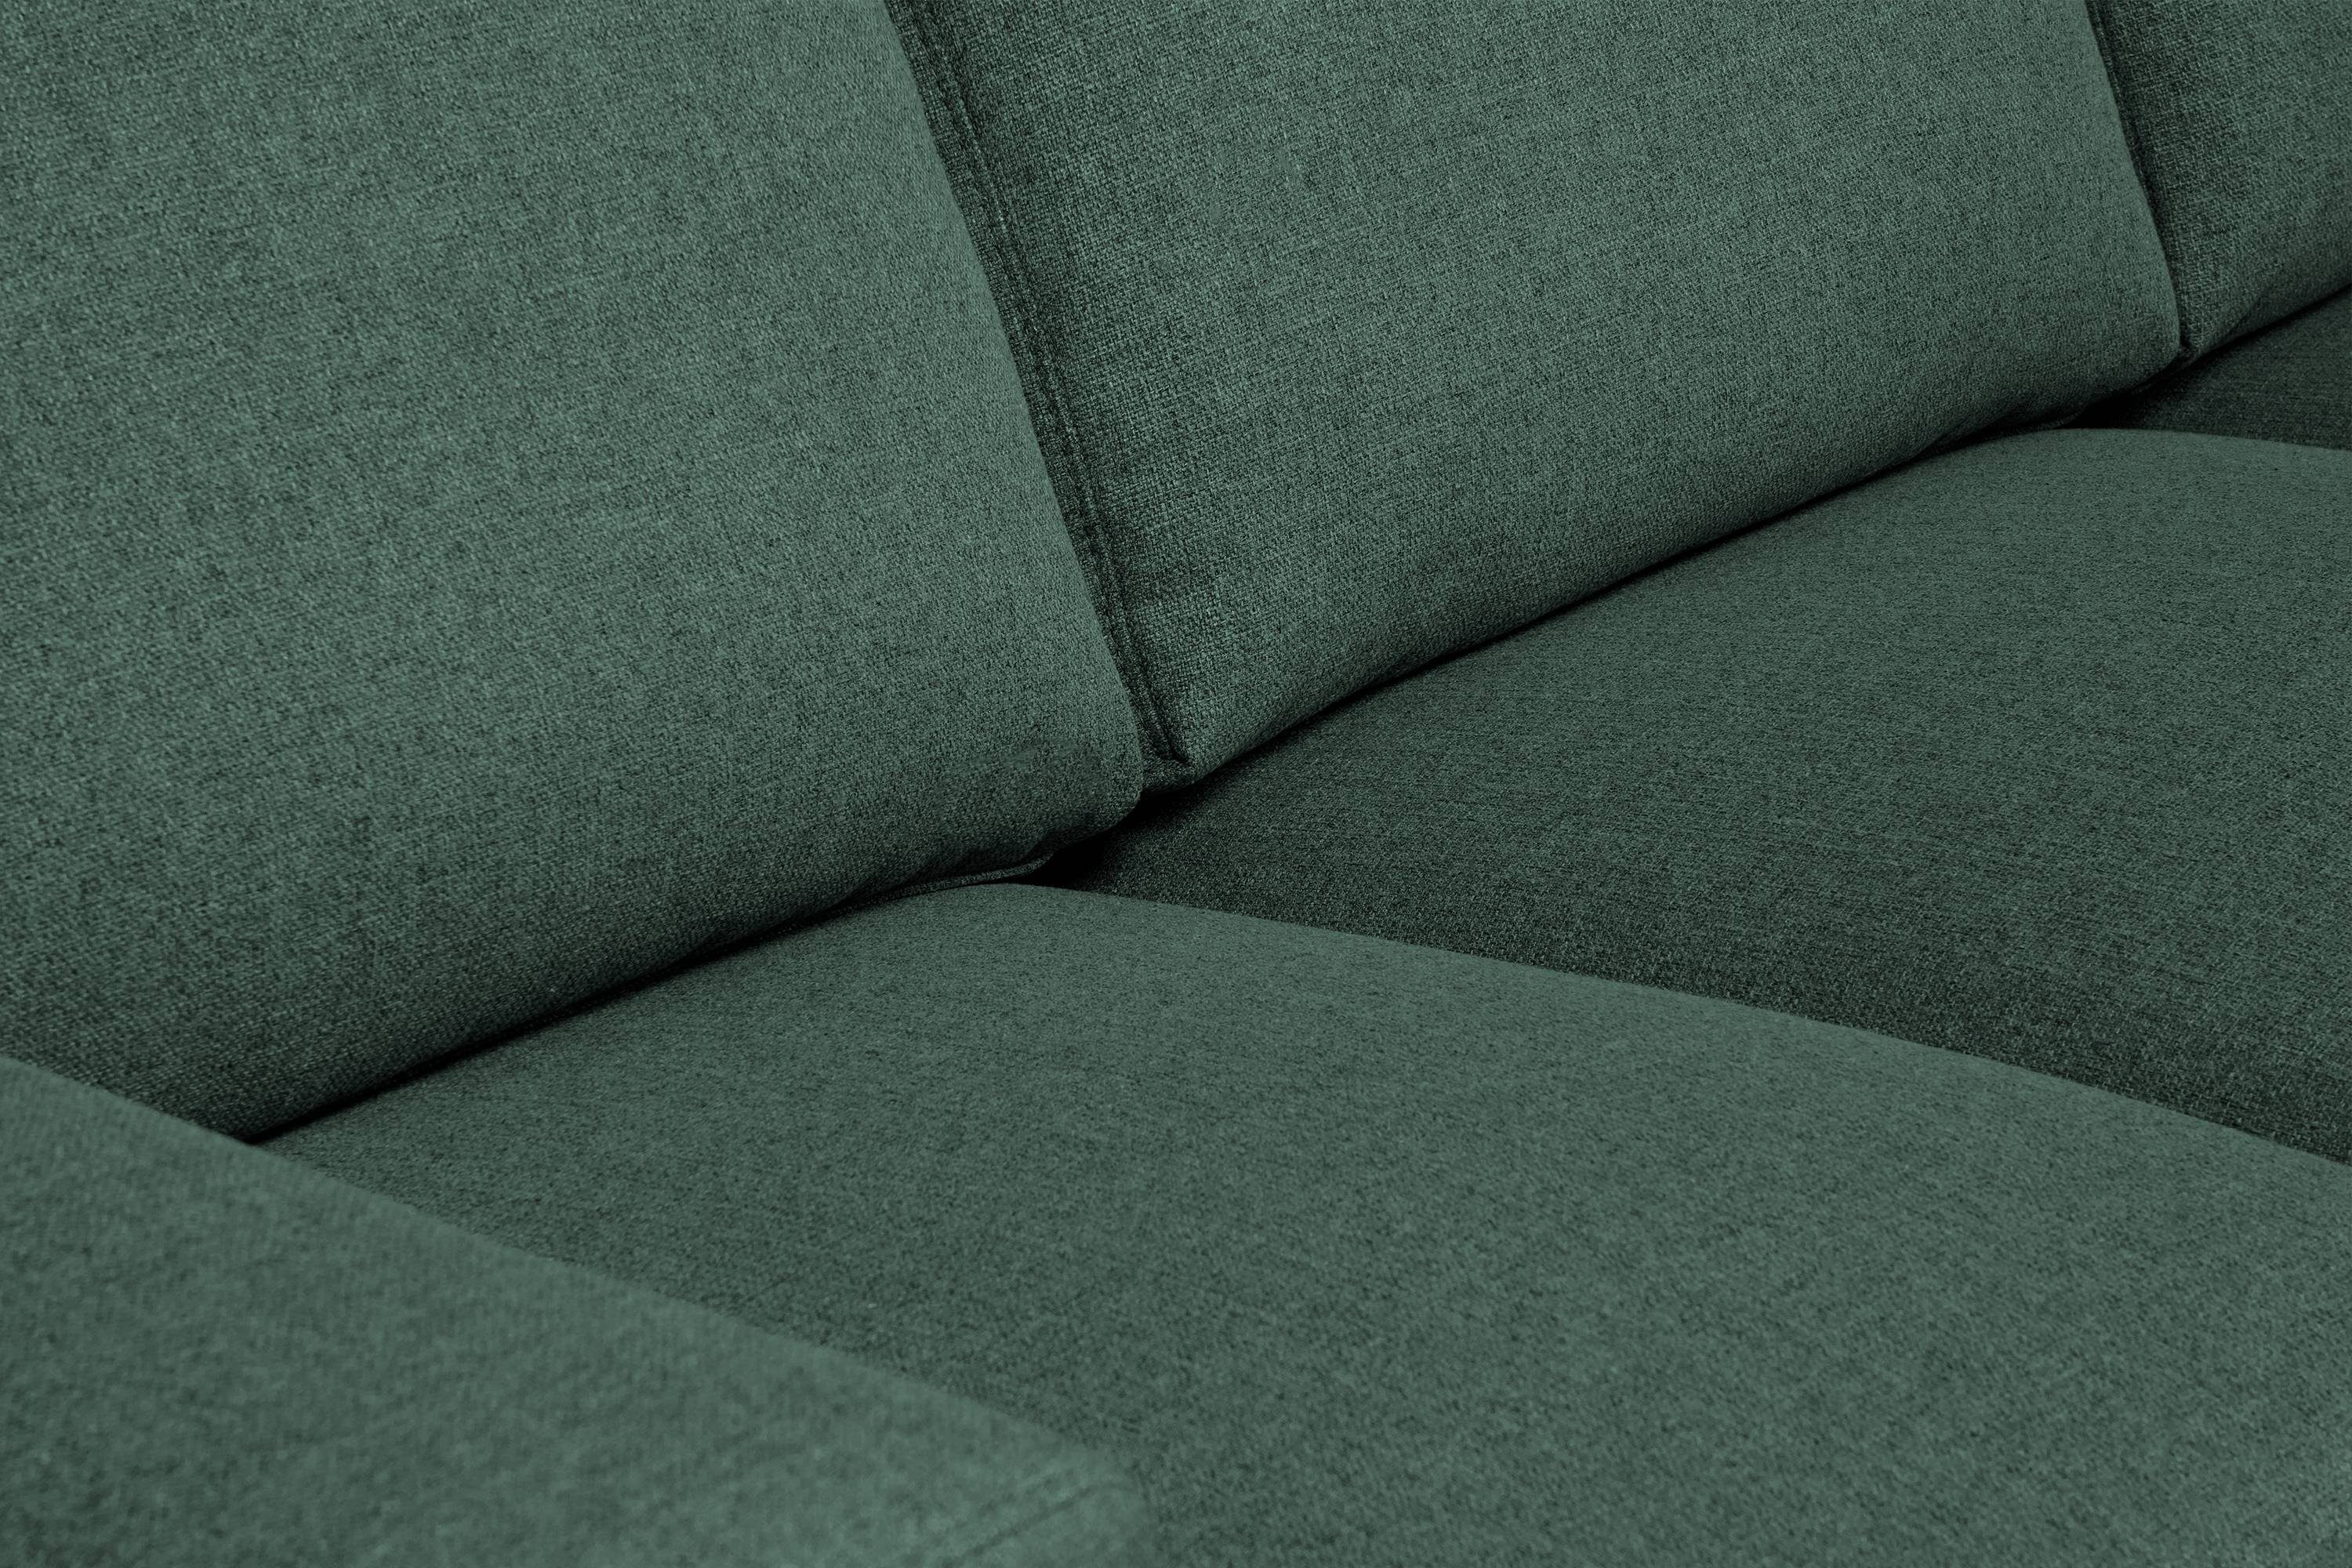 Konsimo 3-Sitzer ALIO zeitloses 3 Sofa grün Design grün grün Massivholzbeine, Personen, | 